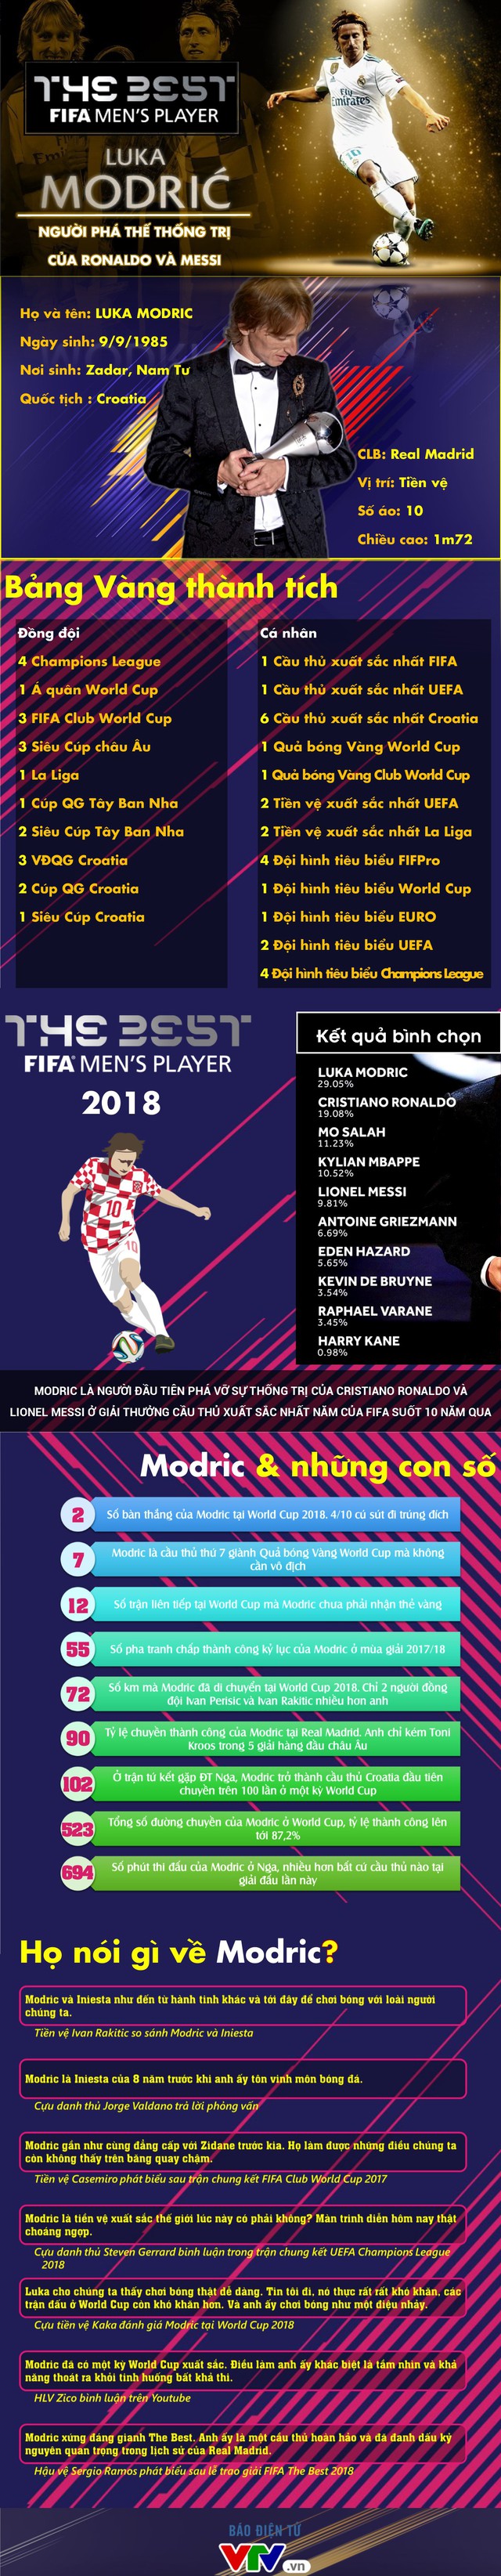 [INFOGRAPHIC] Luka Modric - người phá thế thống trị của Ronaldo và Messi - Ảnh 1.